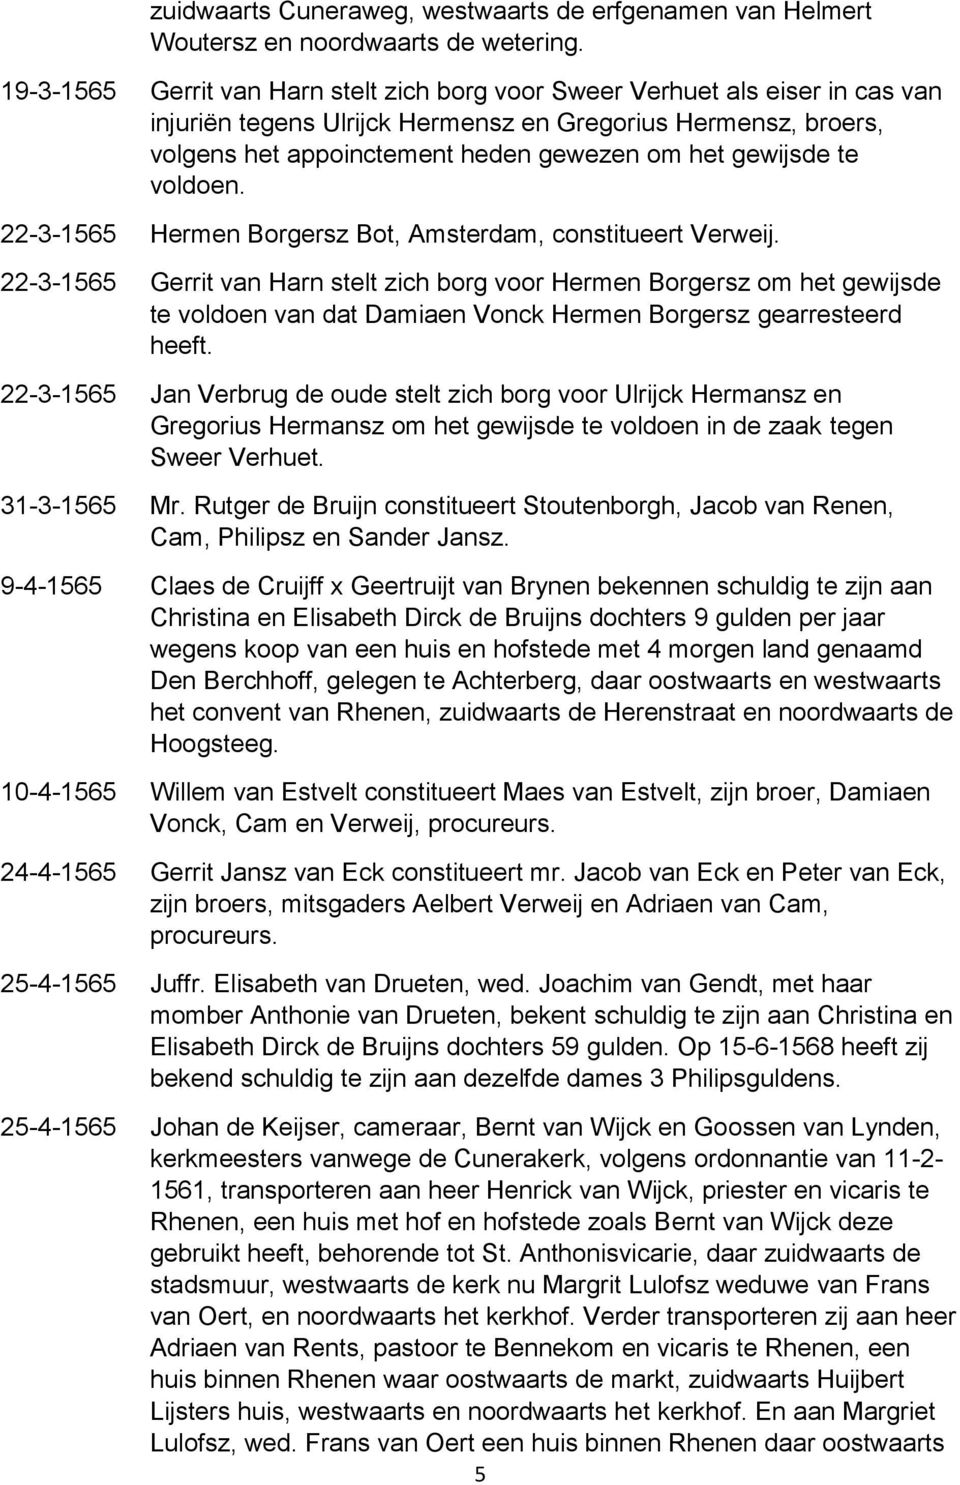 gewijsde te voldoen. 22-3-1565 Hermen Borgersz Bot, Amsterdam, constitueert Verweij.